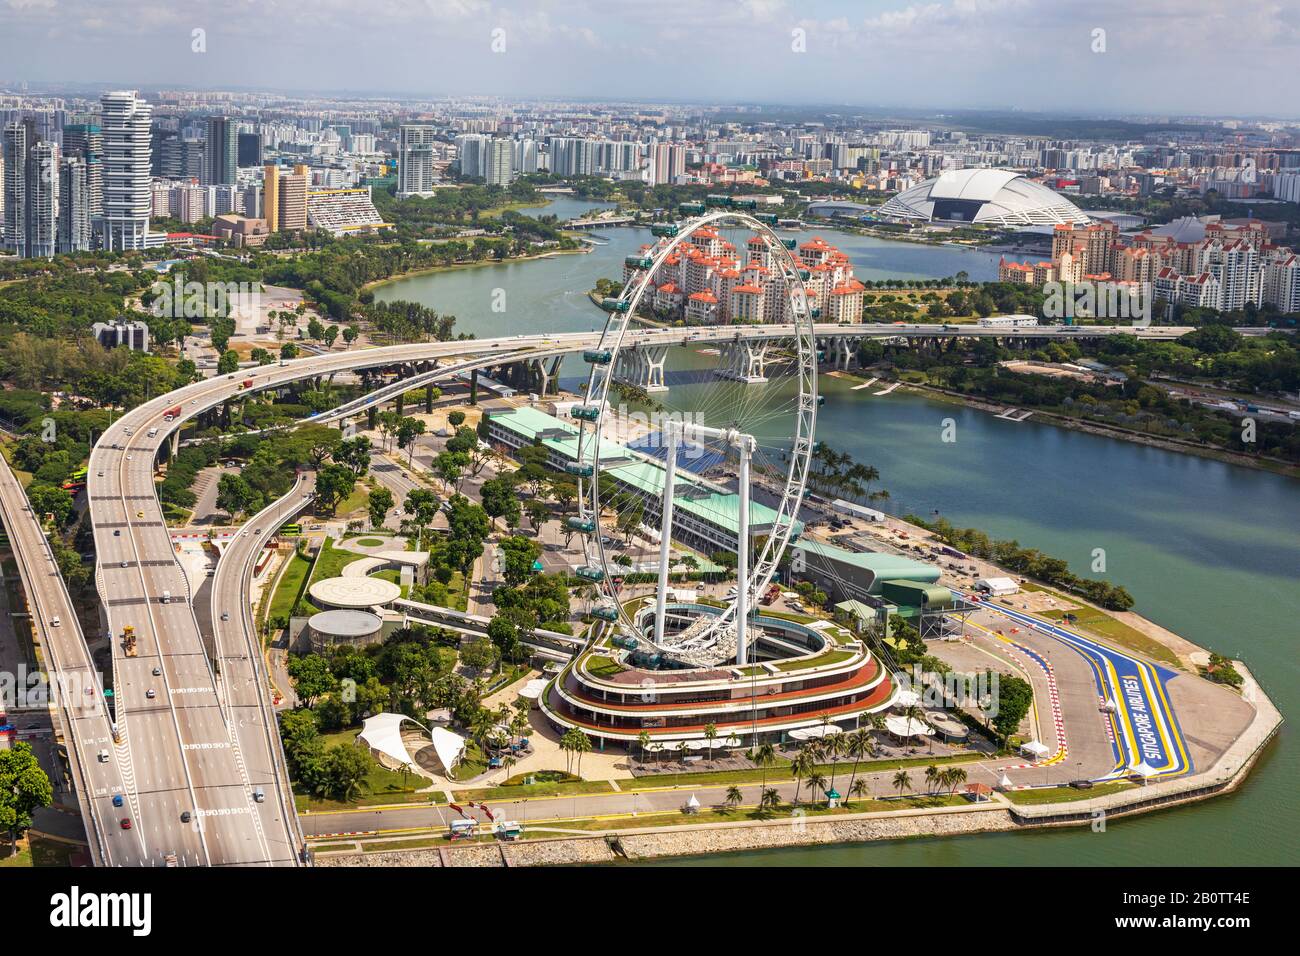 Vista dall'alto dello skyline di Singapore con la ruota panoramica Singapore Flyer e il circuito per il Singapore Grande Prix, Singapore Foto Stock